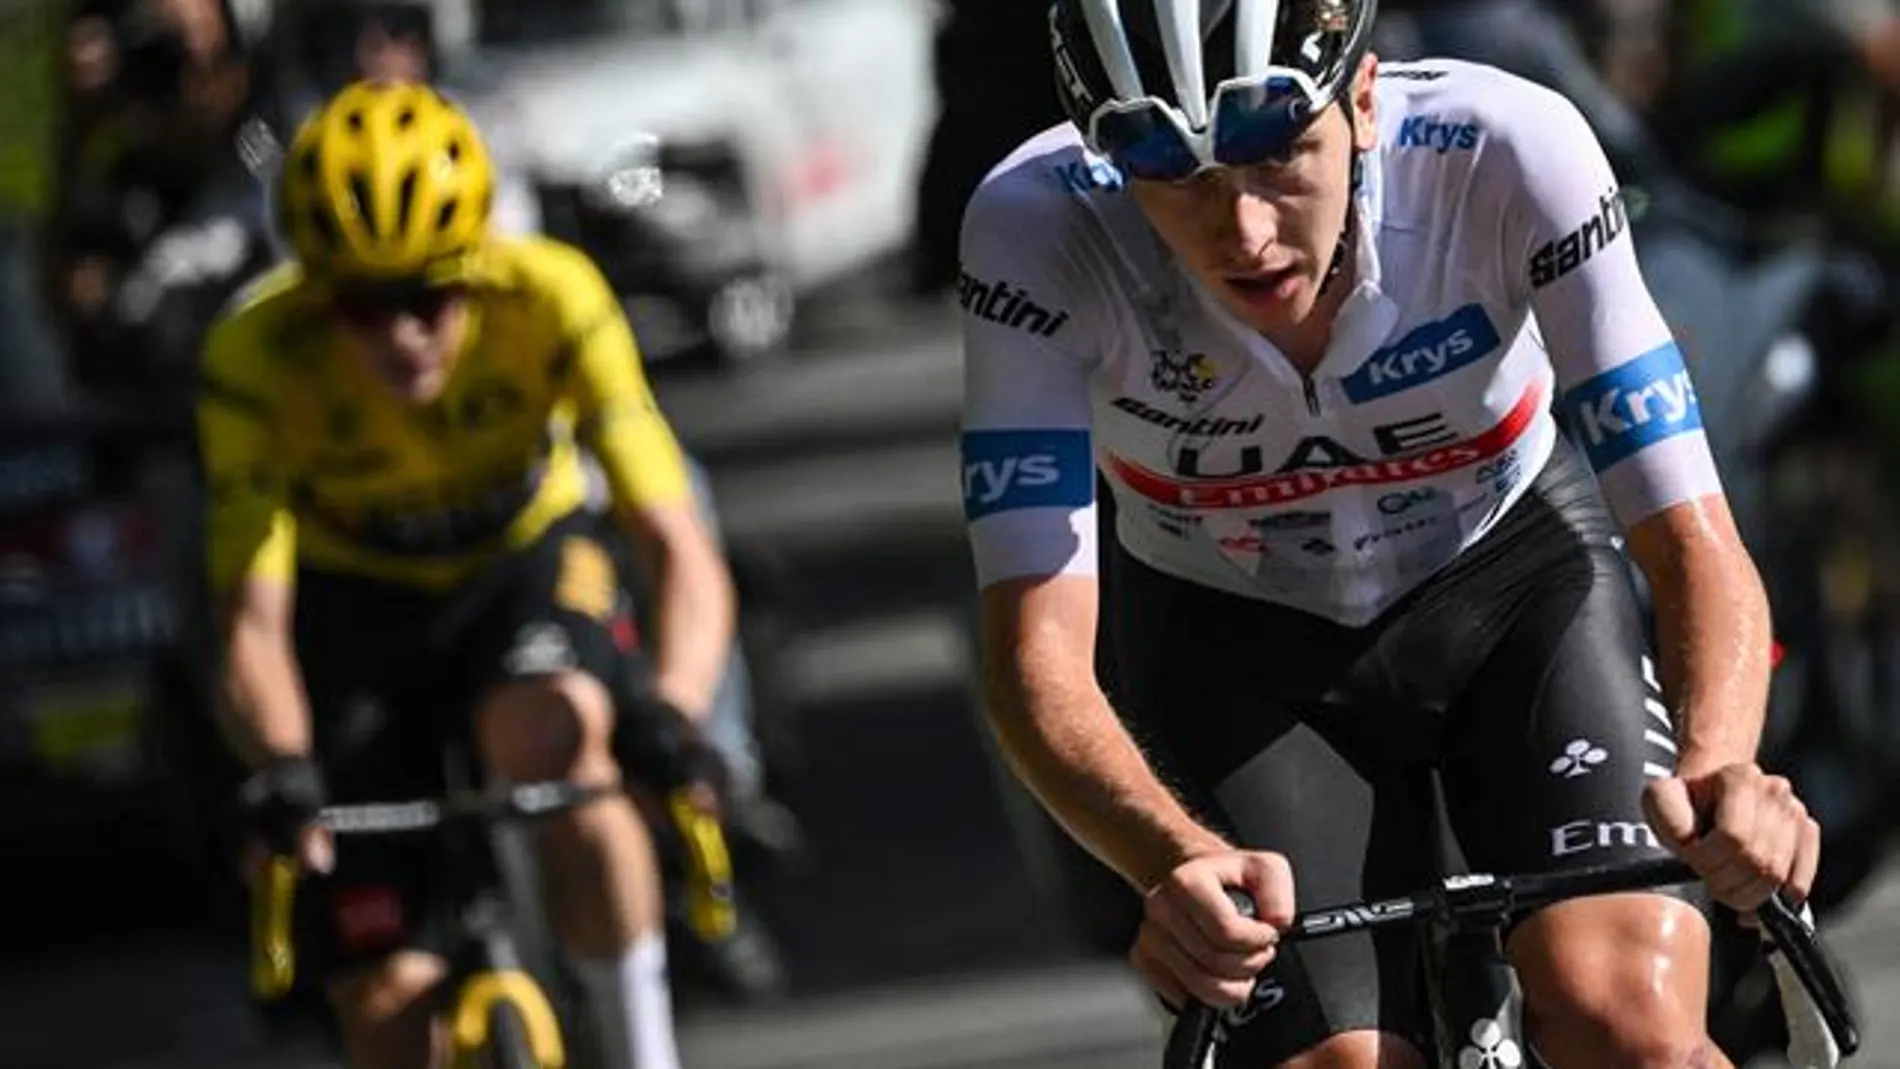 La impactante foto que retrata el épico duelo entre Vingegaard y Pogacar en el Tour de Francia 2023